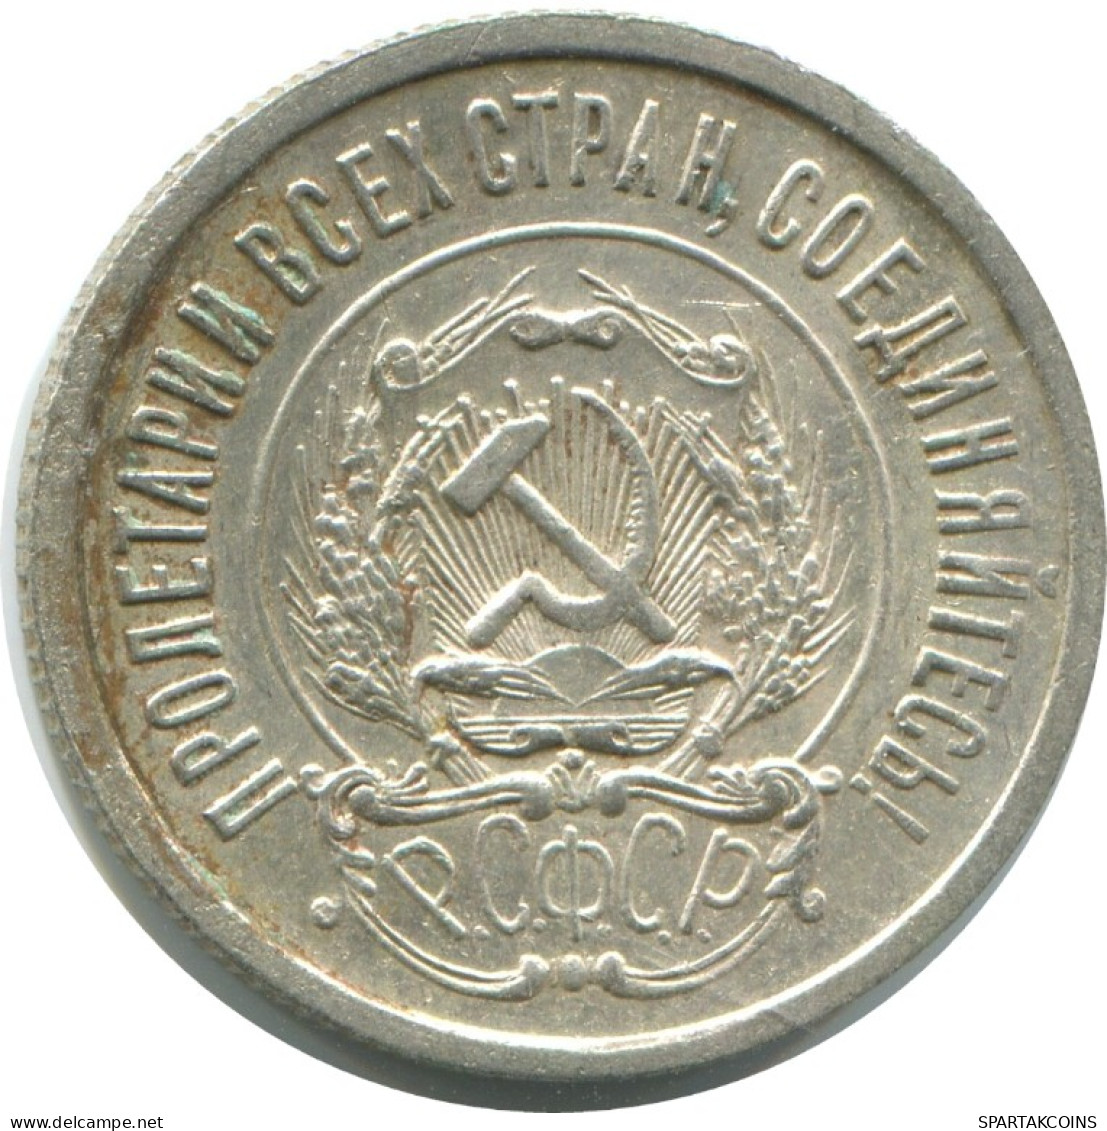 20 KOPEKS 1923 RUSSIA RSFSR SILVER Coin HIGH GRADE #AF577.4.U.A - Rusland